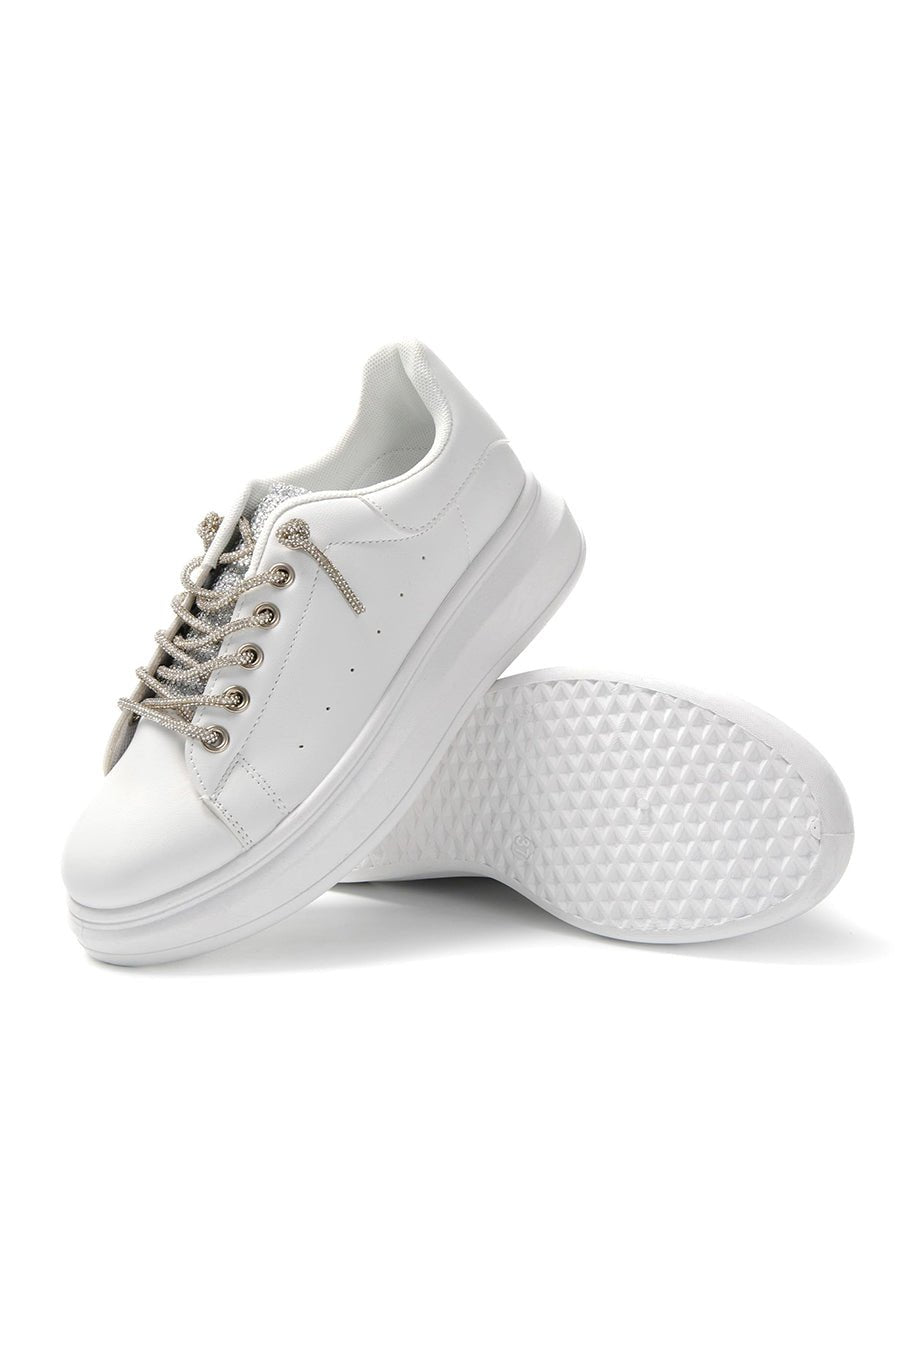 JOMIX Sneakers Donna Casual Scarpe Eleganti Sportive da Tempo Libero SD8846